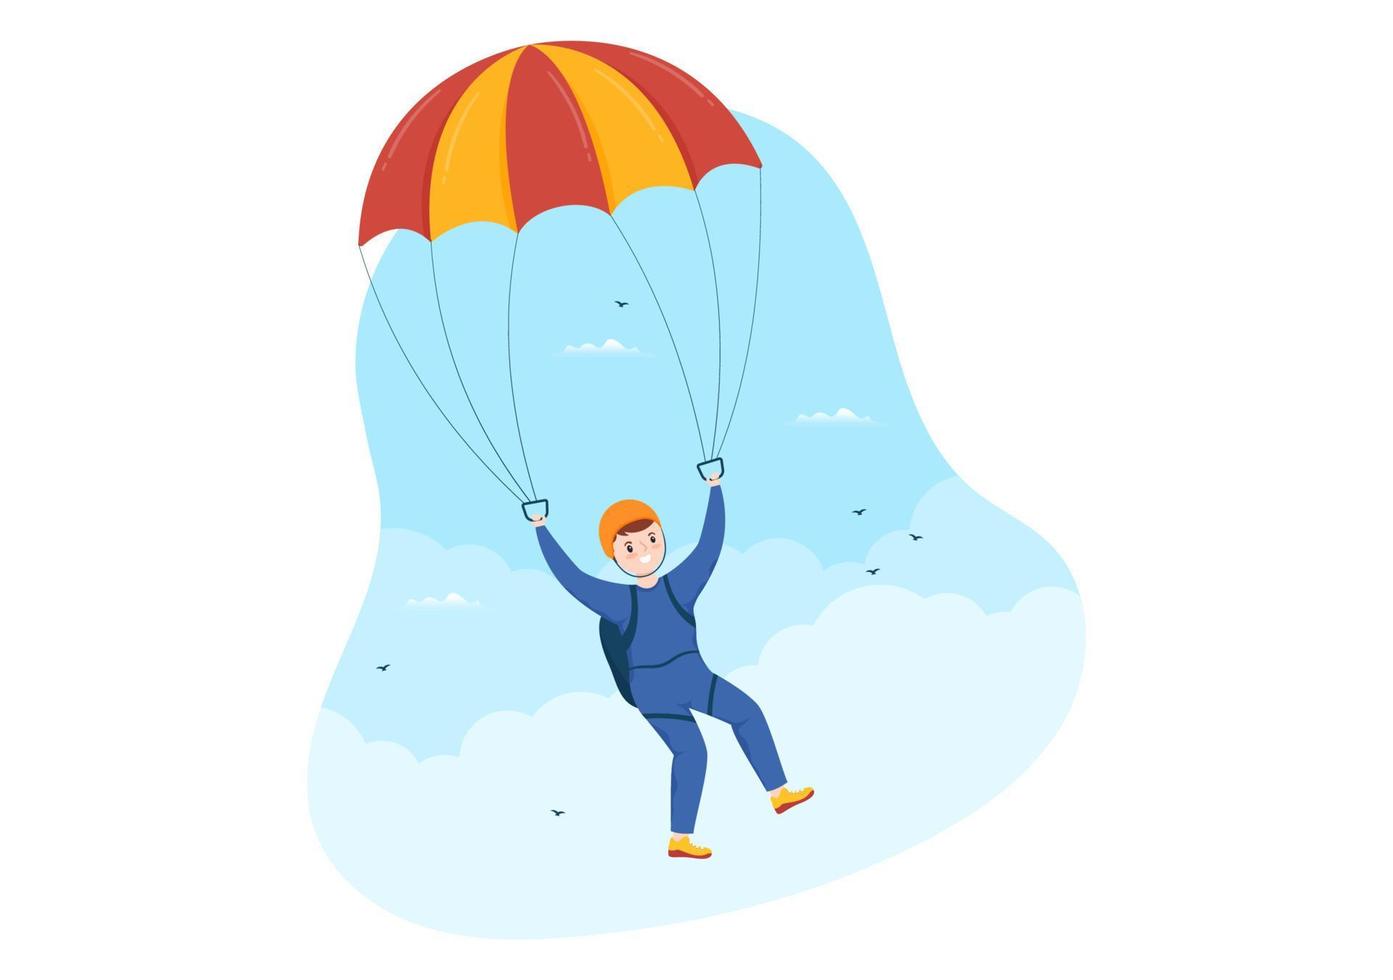 ilustración de paracaidismo con paracaidistas que usan paracaídas y salto del cielo para actividades al aire libre en plantillas dibujadas a mano de dibujos animados de deportes extremos planos vector